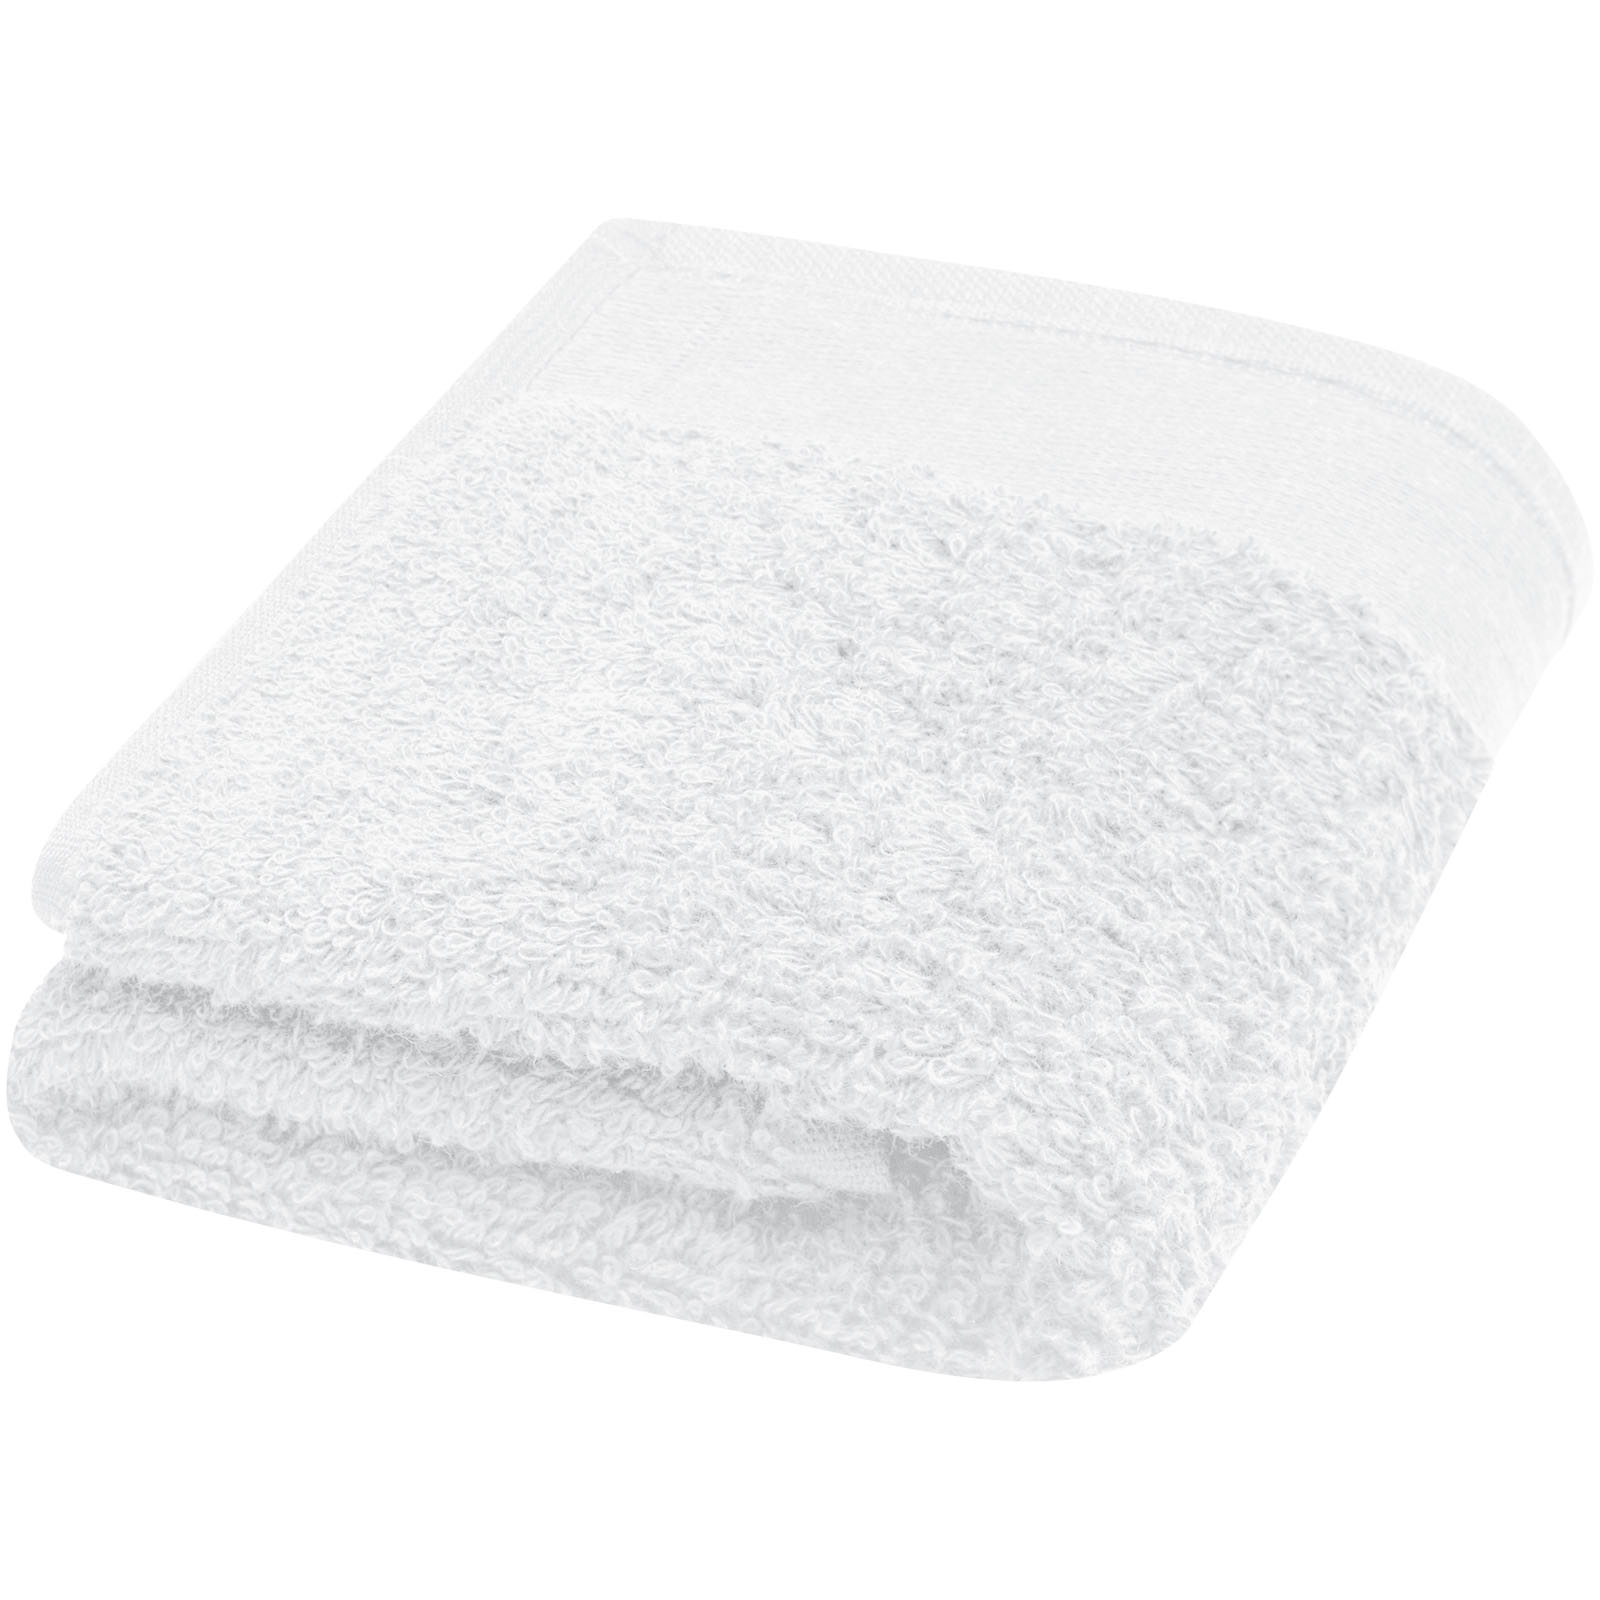 Towels - Chloe 550 g/m² cotton towel 30x50 cm